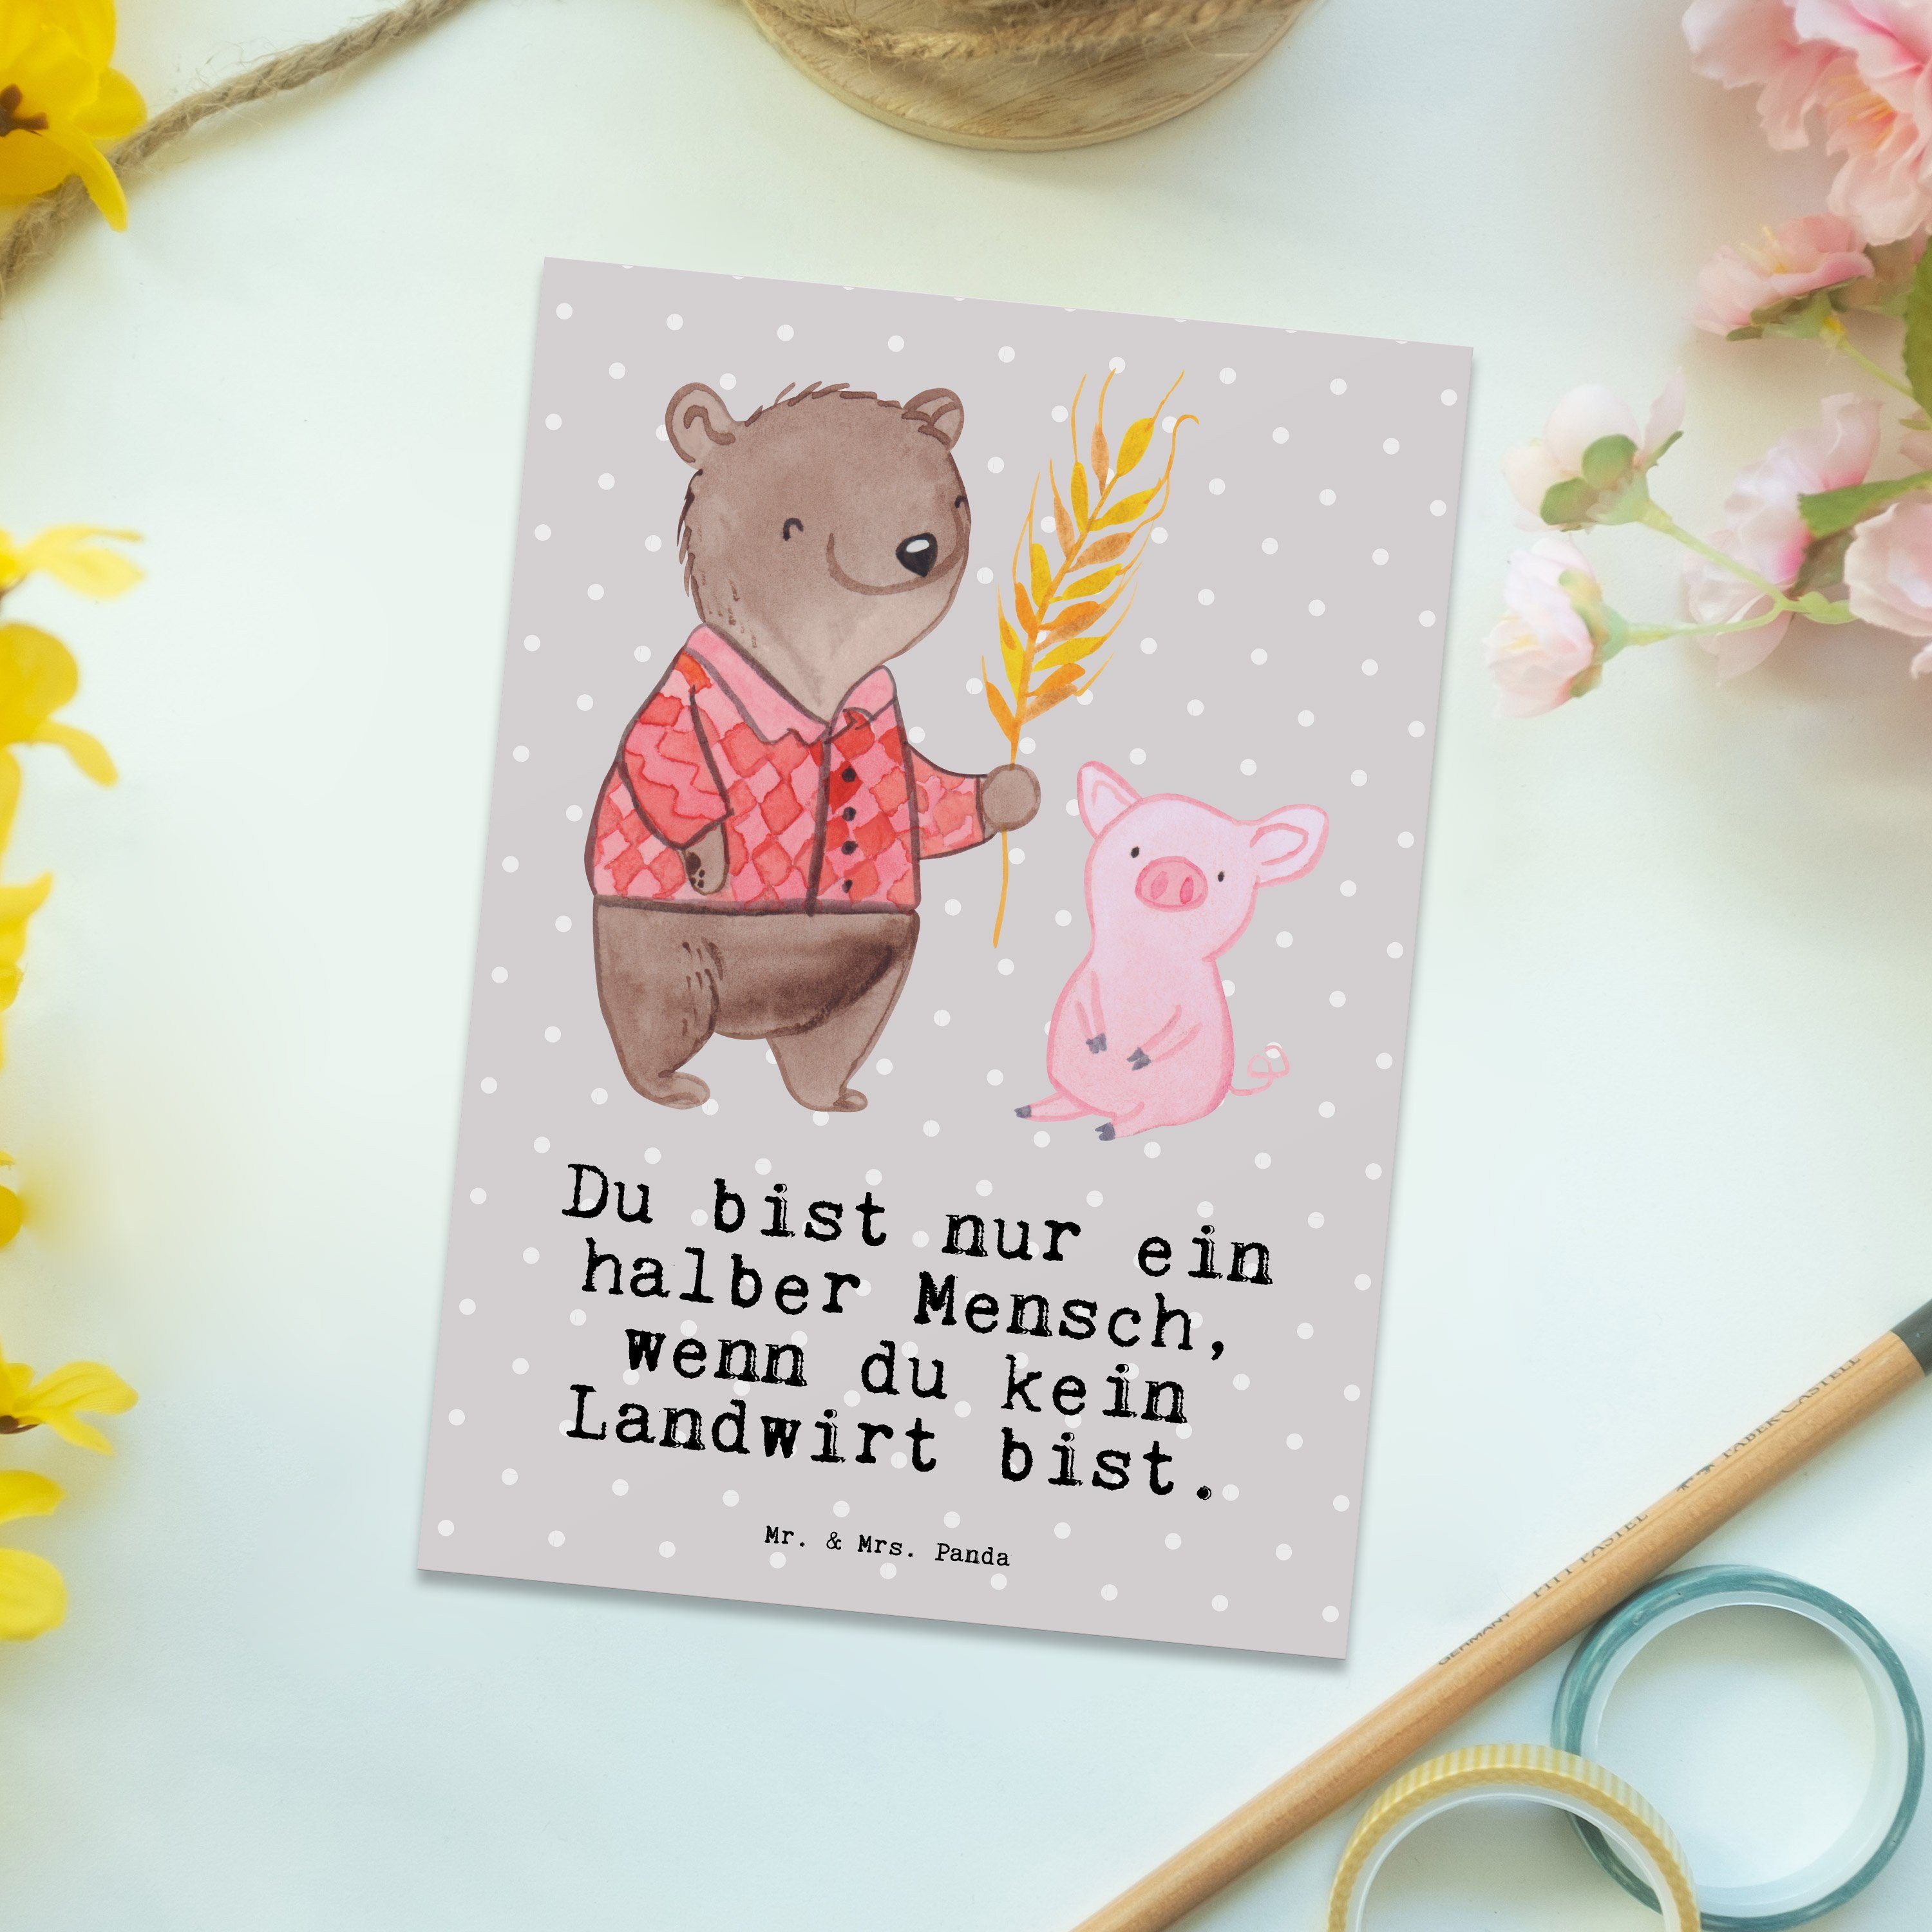 Mr. & Mrs. Panda Postkarte Landwirt mit Herz - Grau Pastell - Geschenk, Arbeitskollege, Geschenk